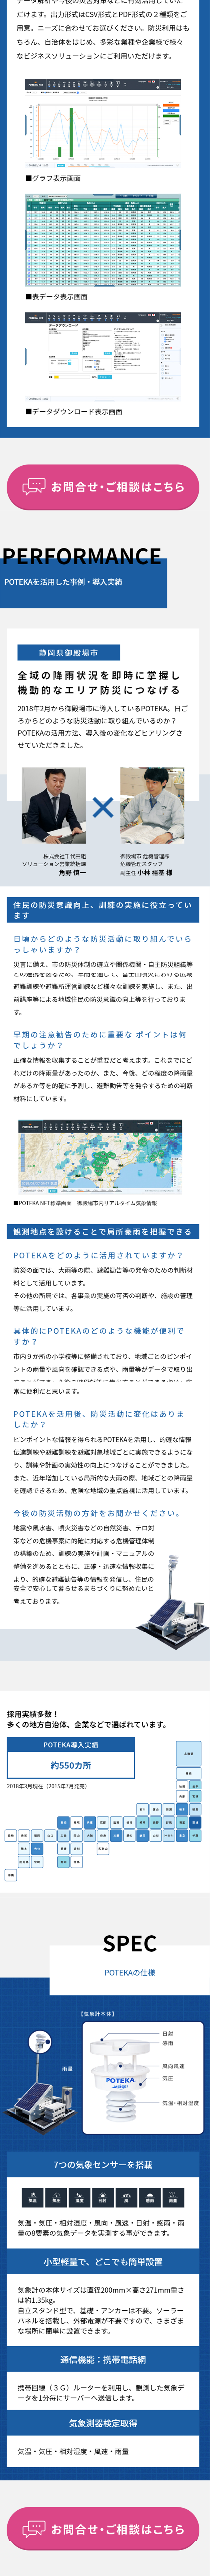 超高密度気象観測システム POTEKA_sp_2